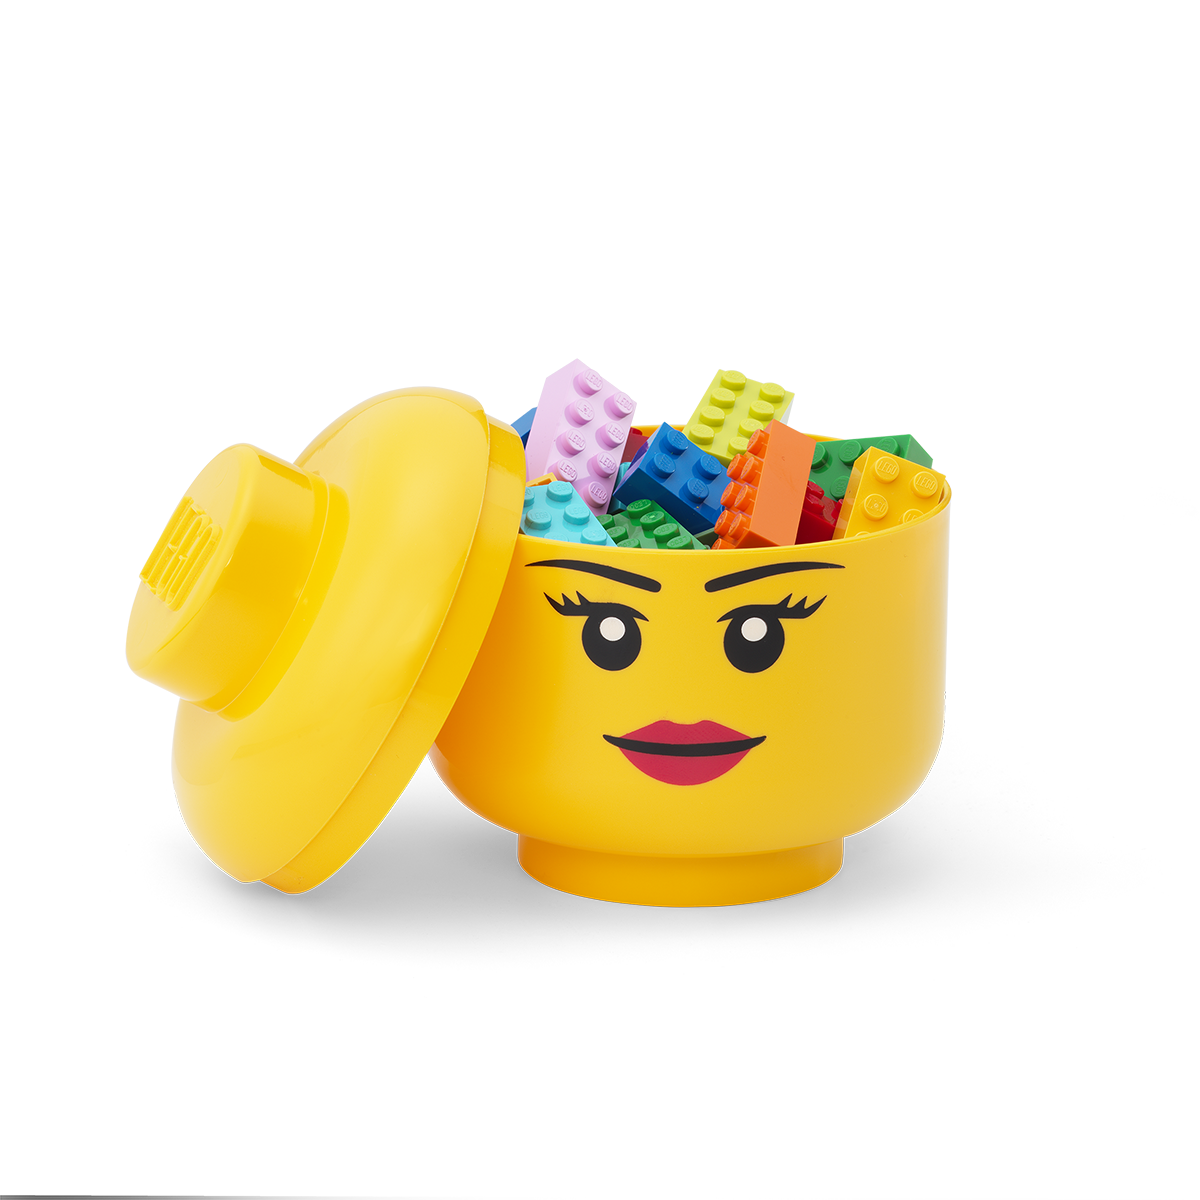 Contenedor Lego Cara Girl